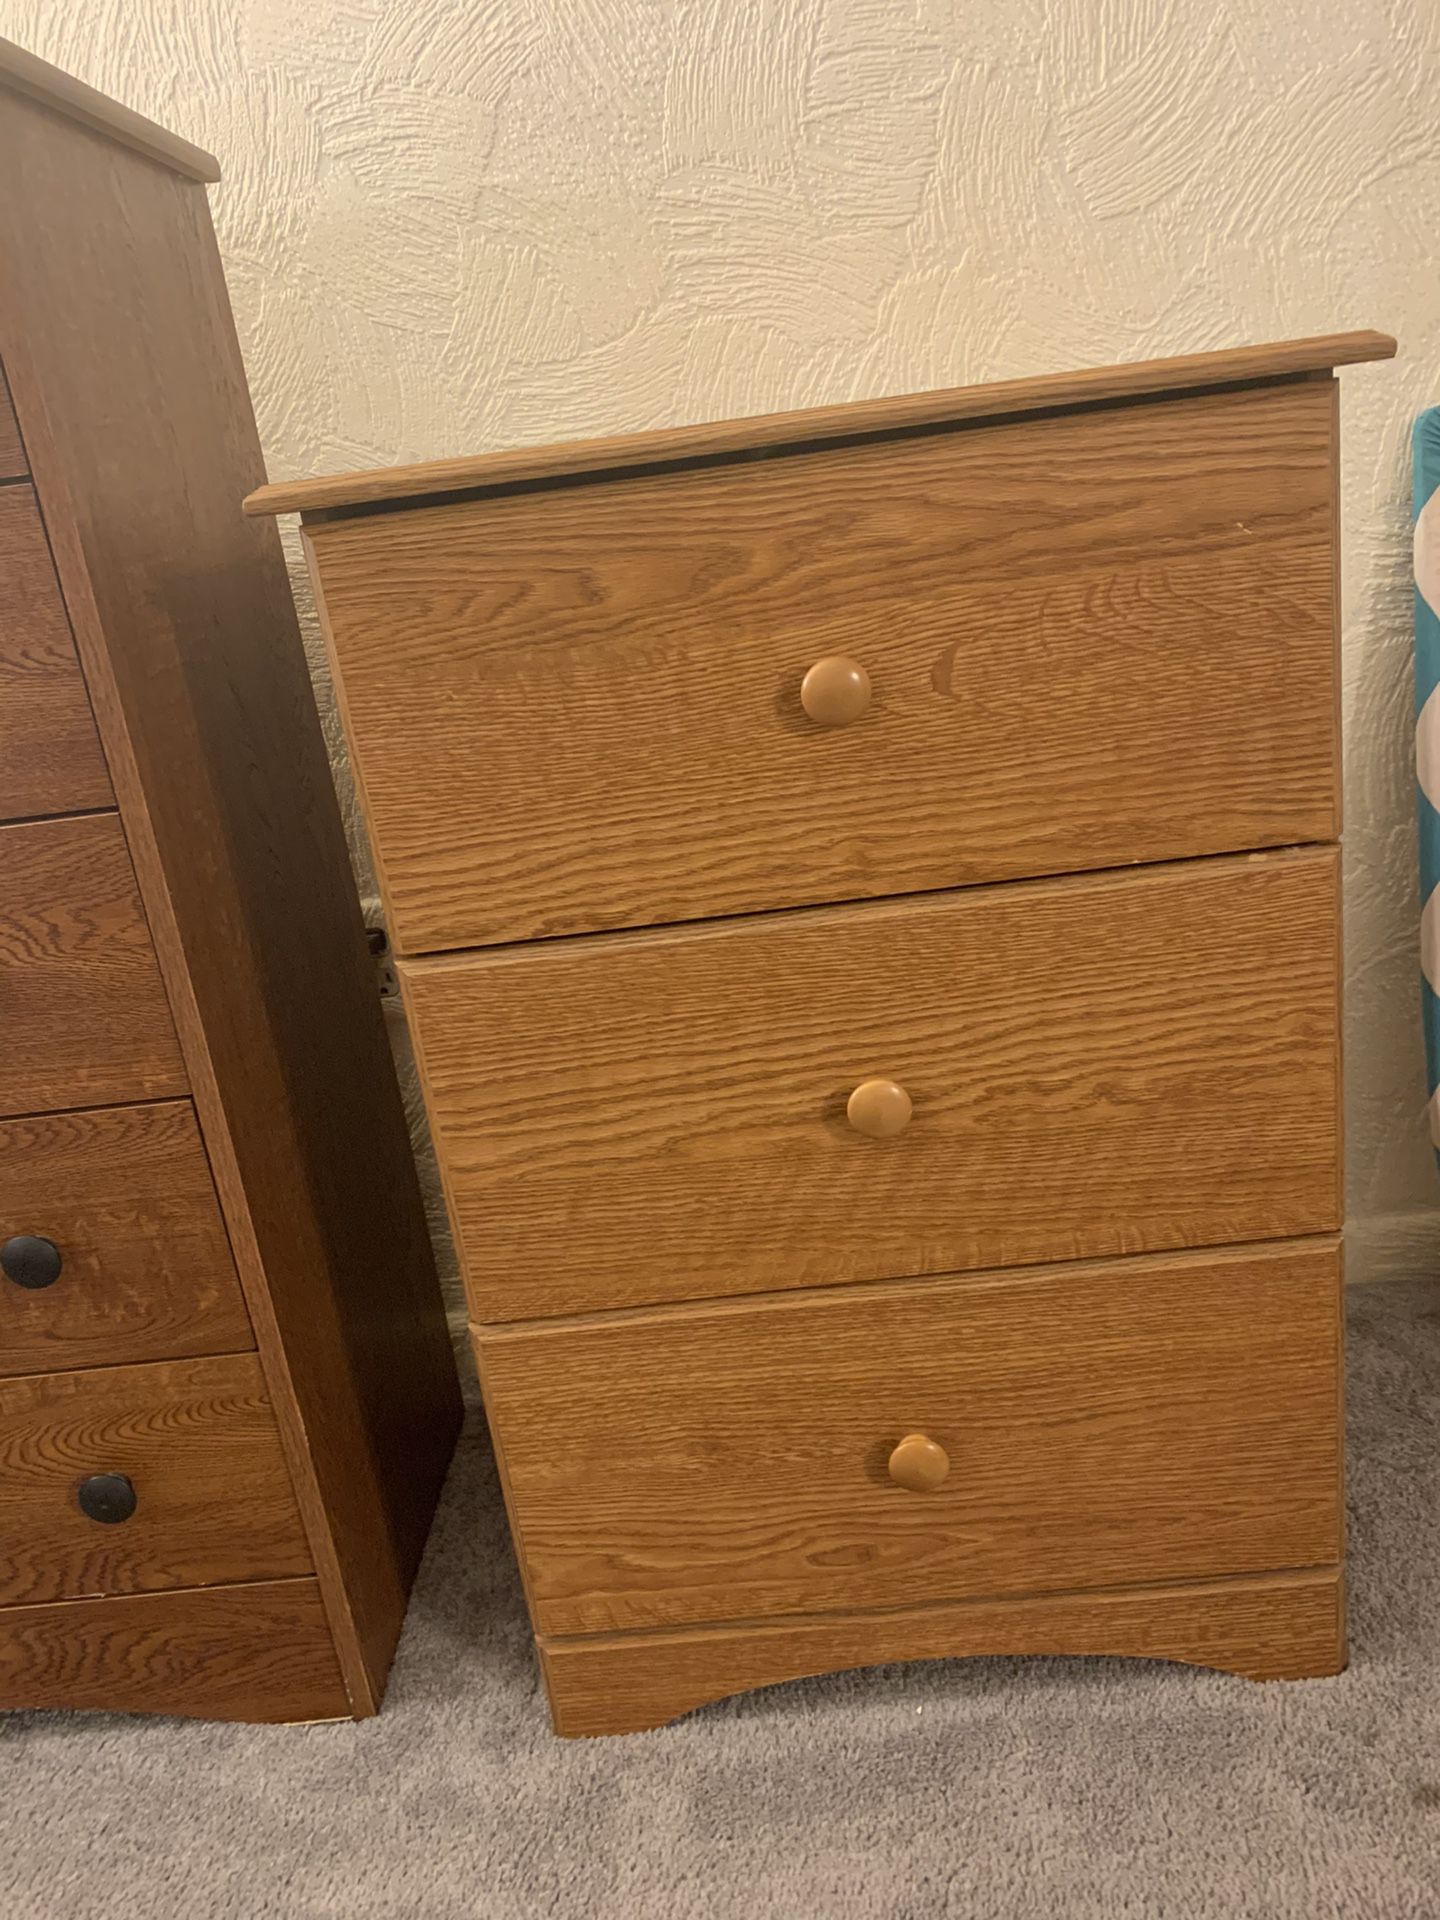 Wooden 3 drawer dresser